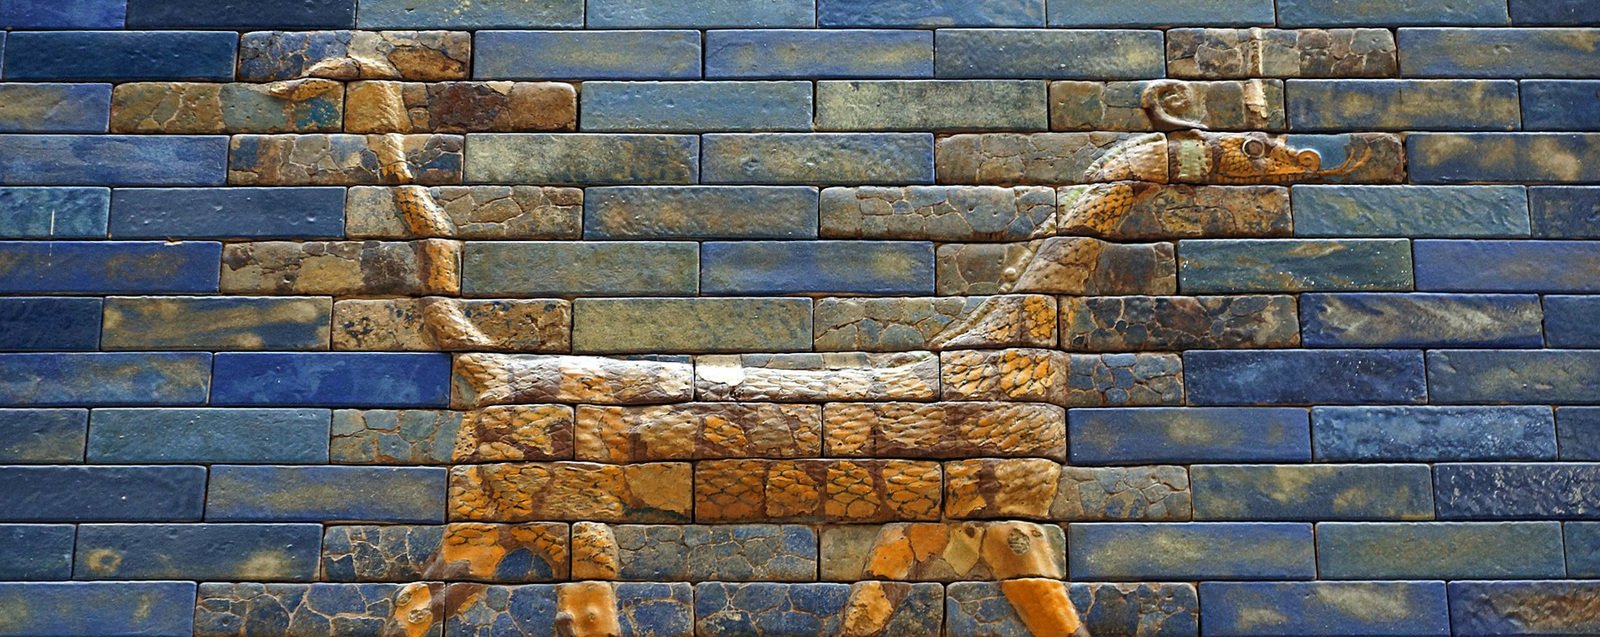 Иллюстрация: Сирруш. Фрагмент рельефа на воротах богини Иштар. Музей Пергамон, Берлин